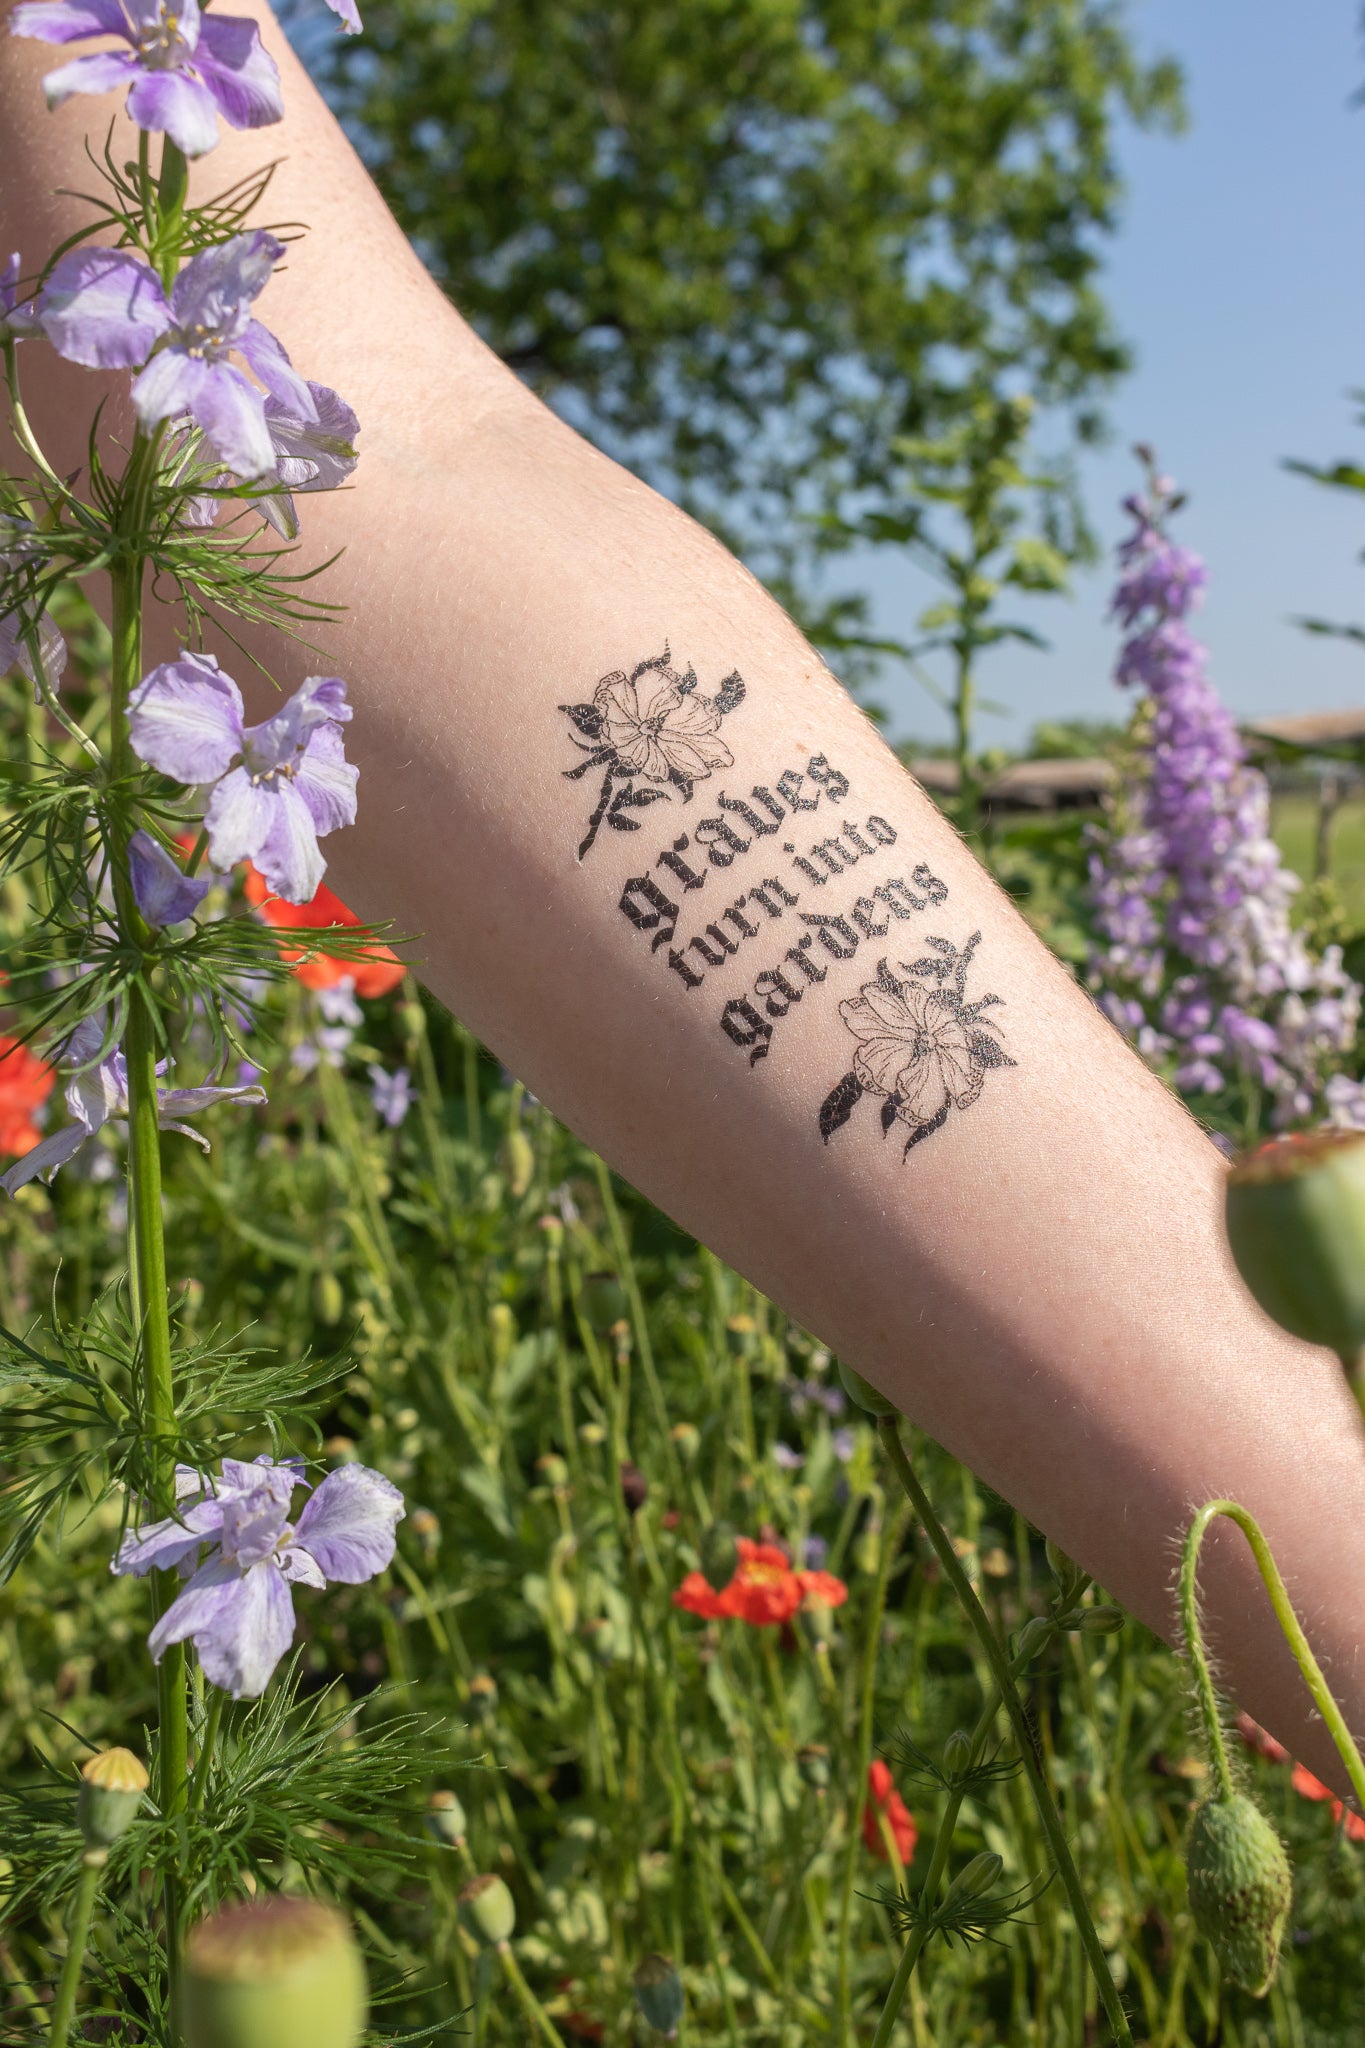 Deep Peace of the Wild Garden #garden #tattoo #tattooer #t… | Flickr